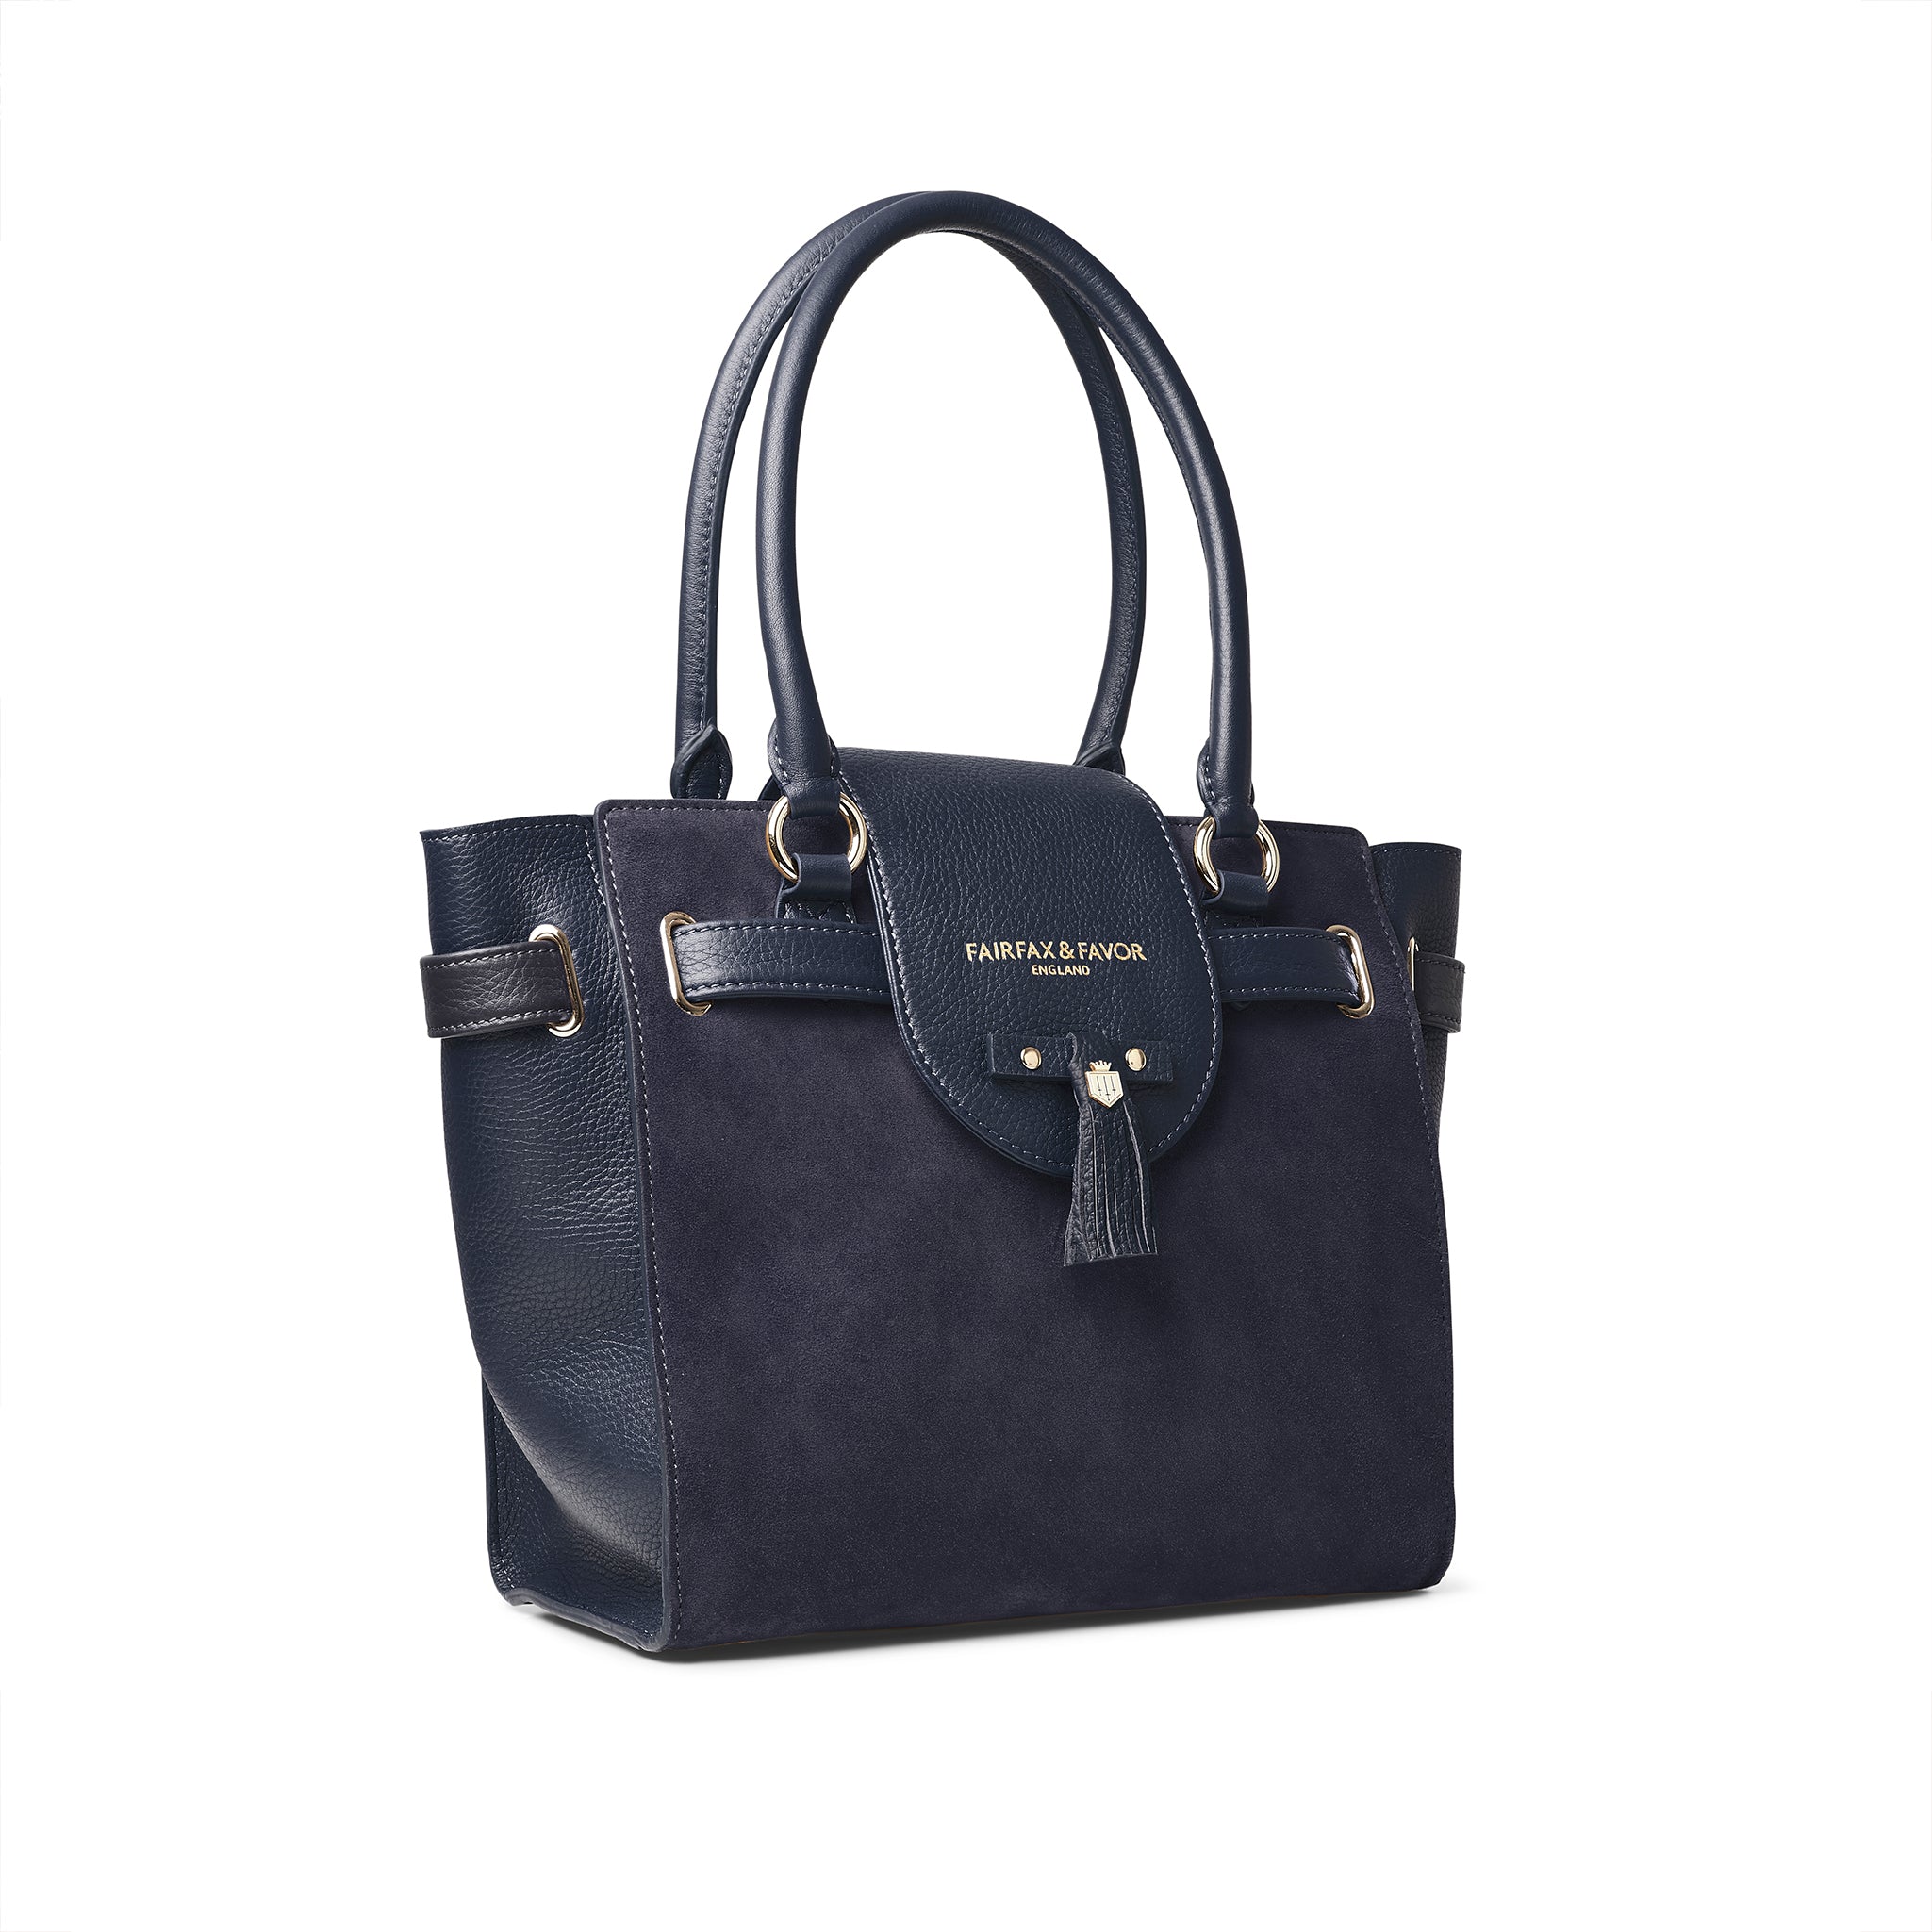 Fairfax & Favor Ladies Windsor Tote Bag